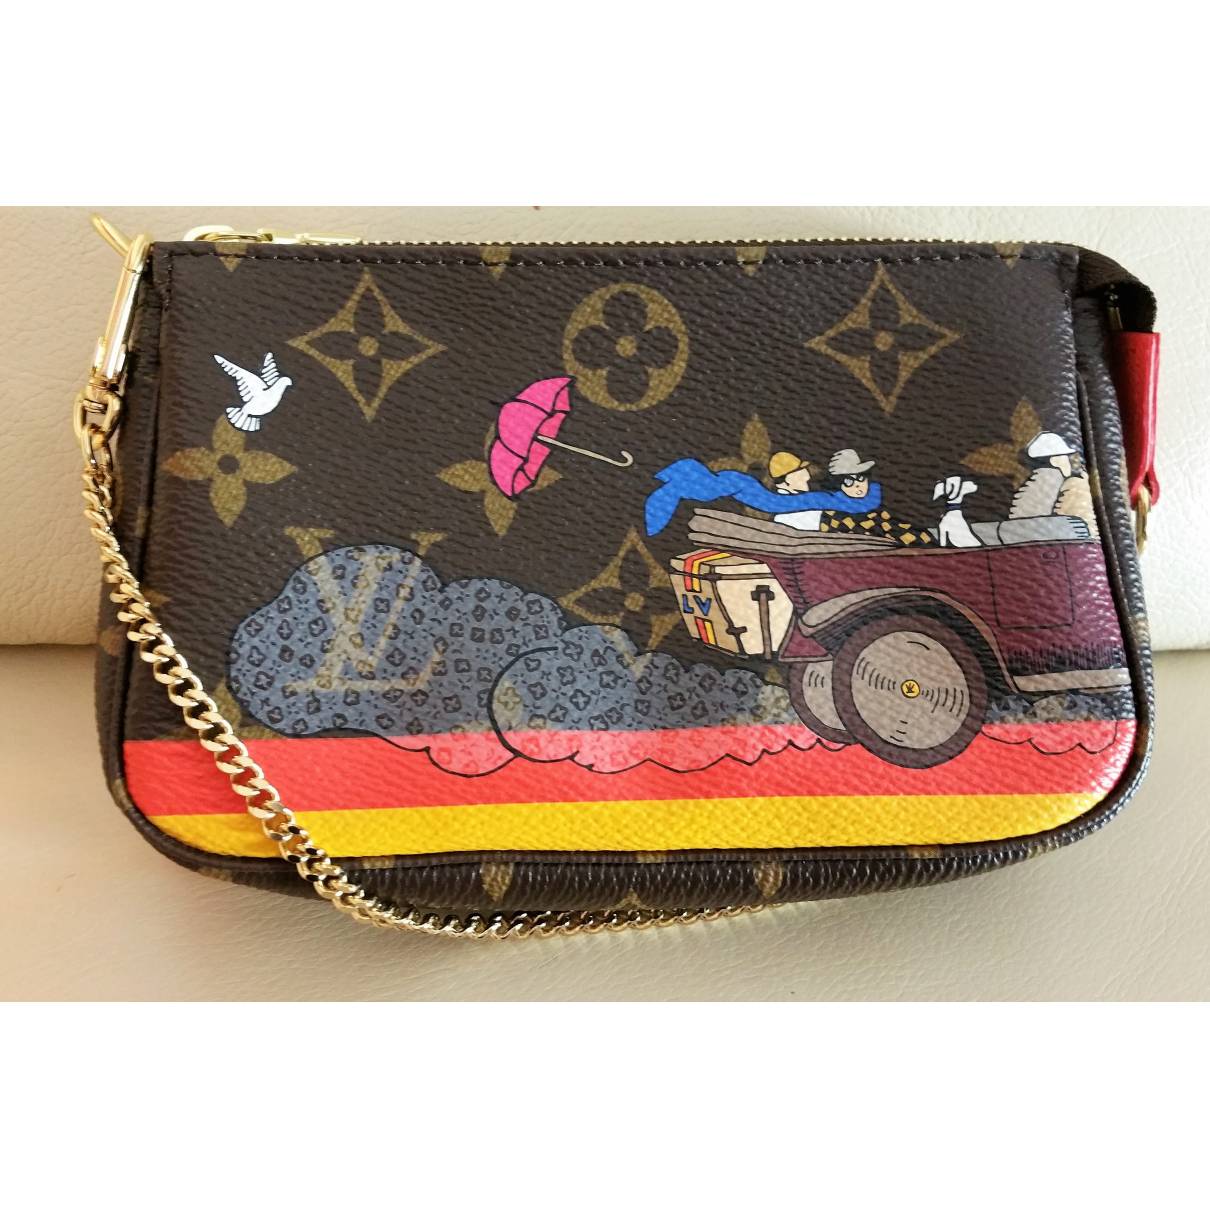 lv limited edition handbag